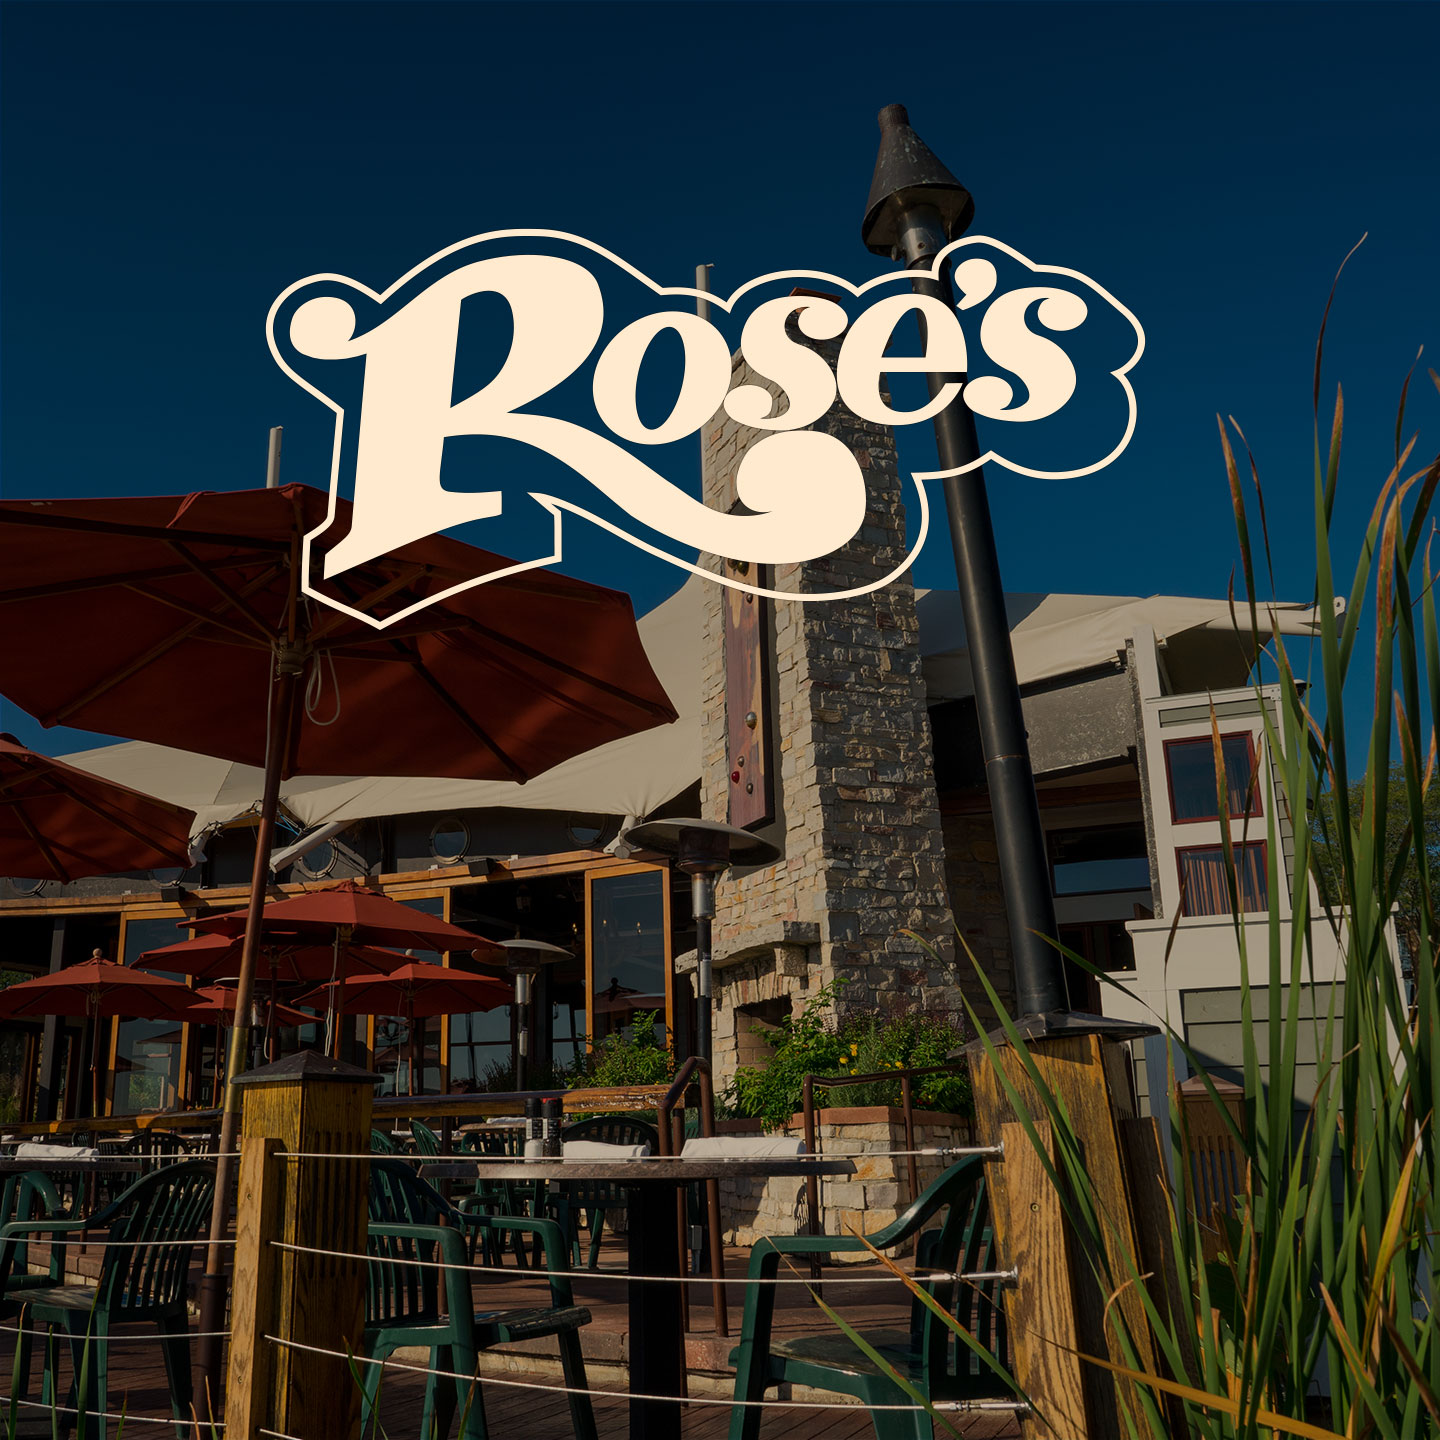 Rose's Restaurant